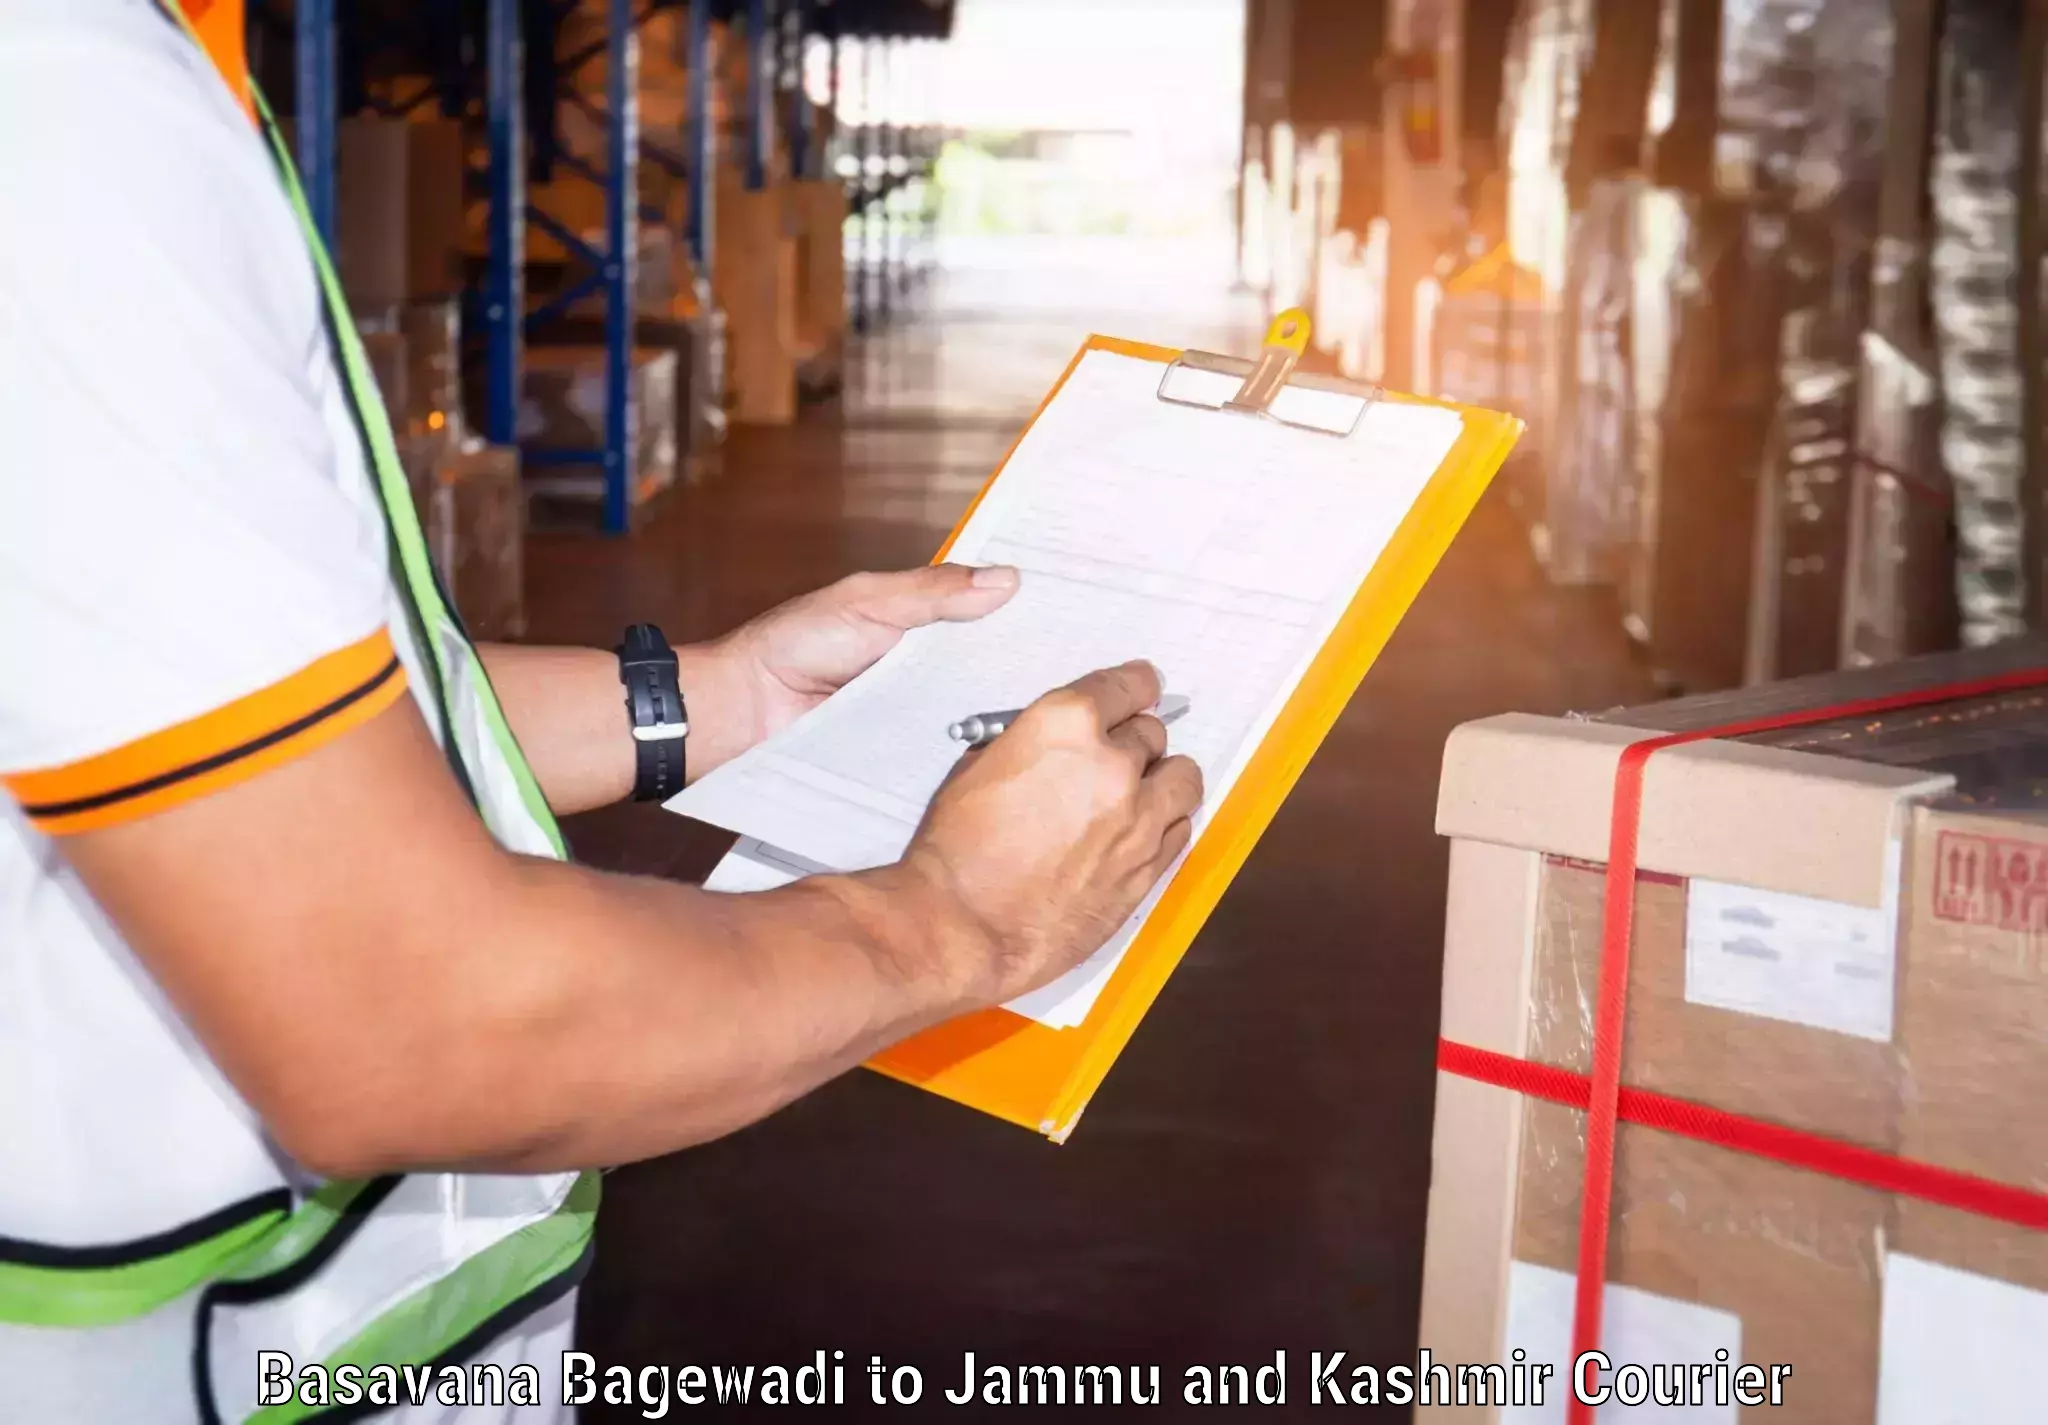 Professional courier handling in Basavana Bagewadi to Jammu and Kashmir